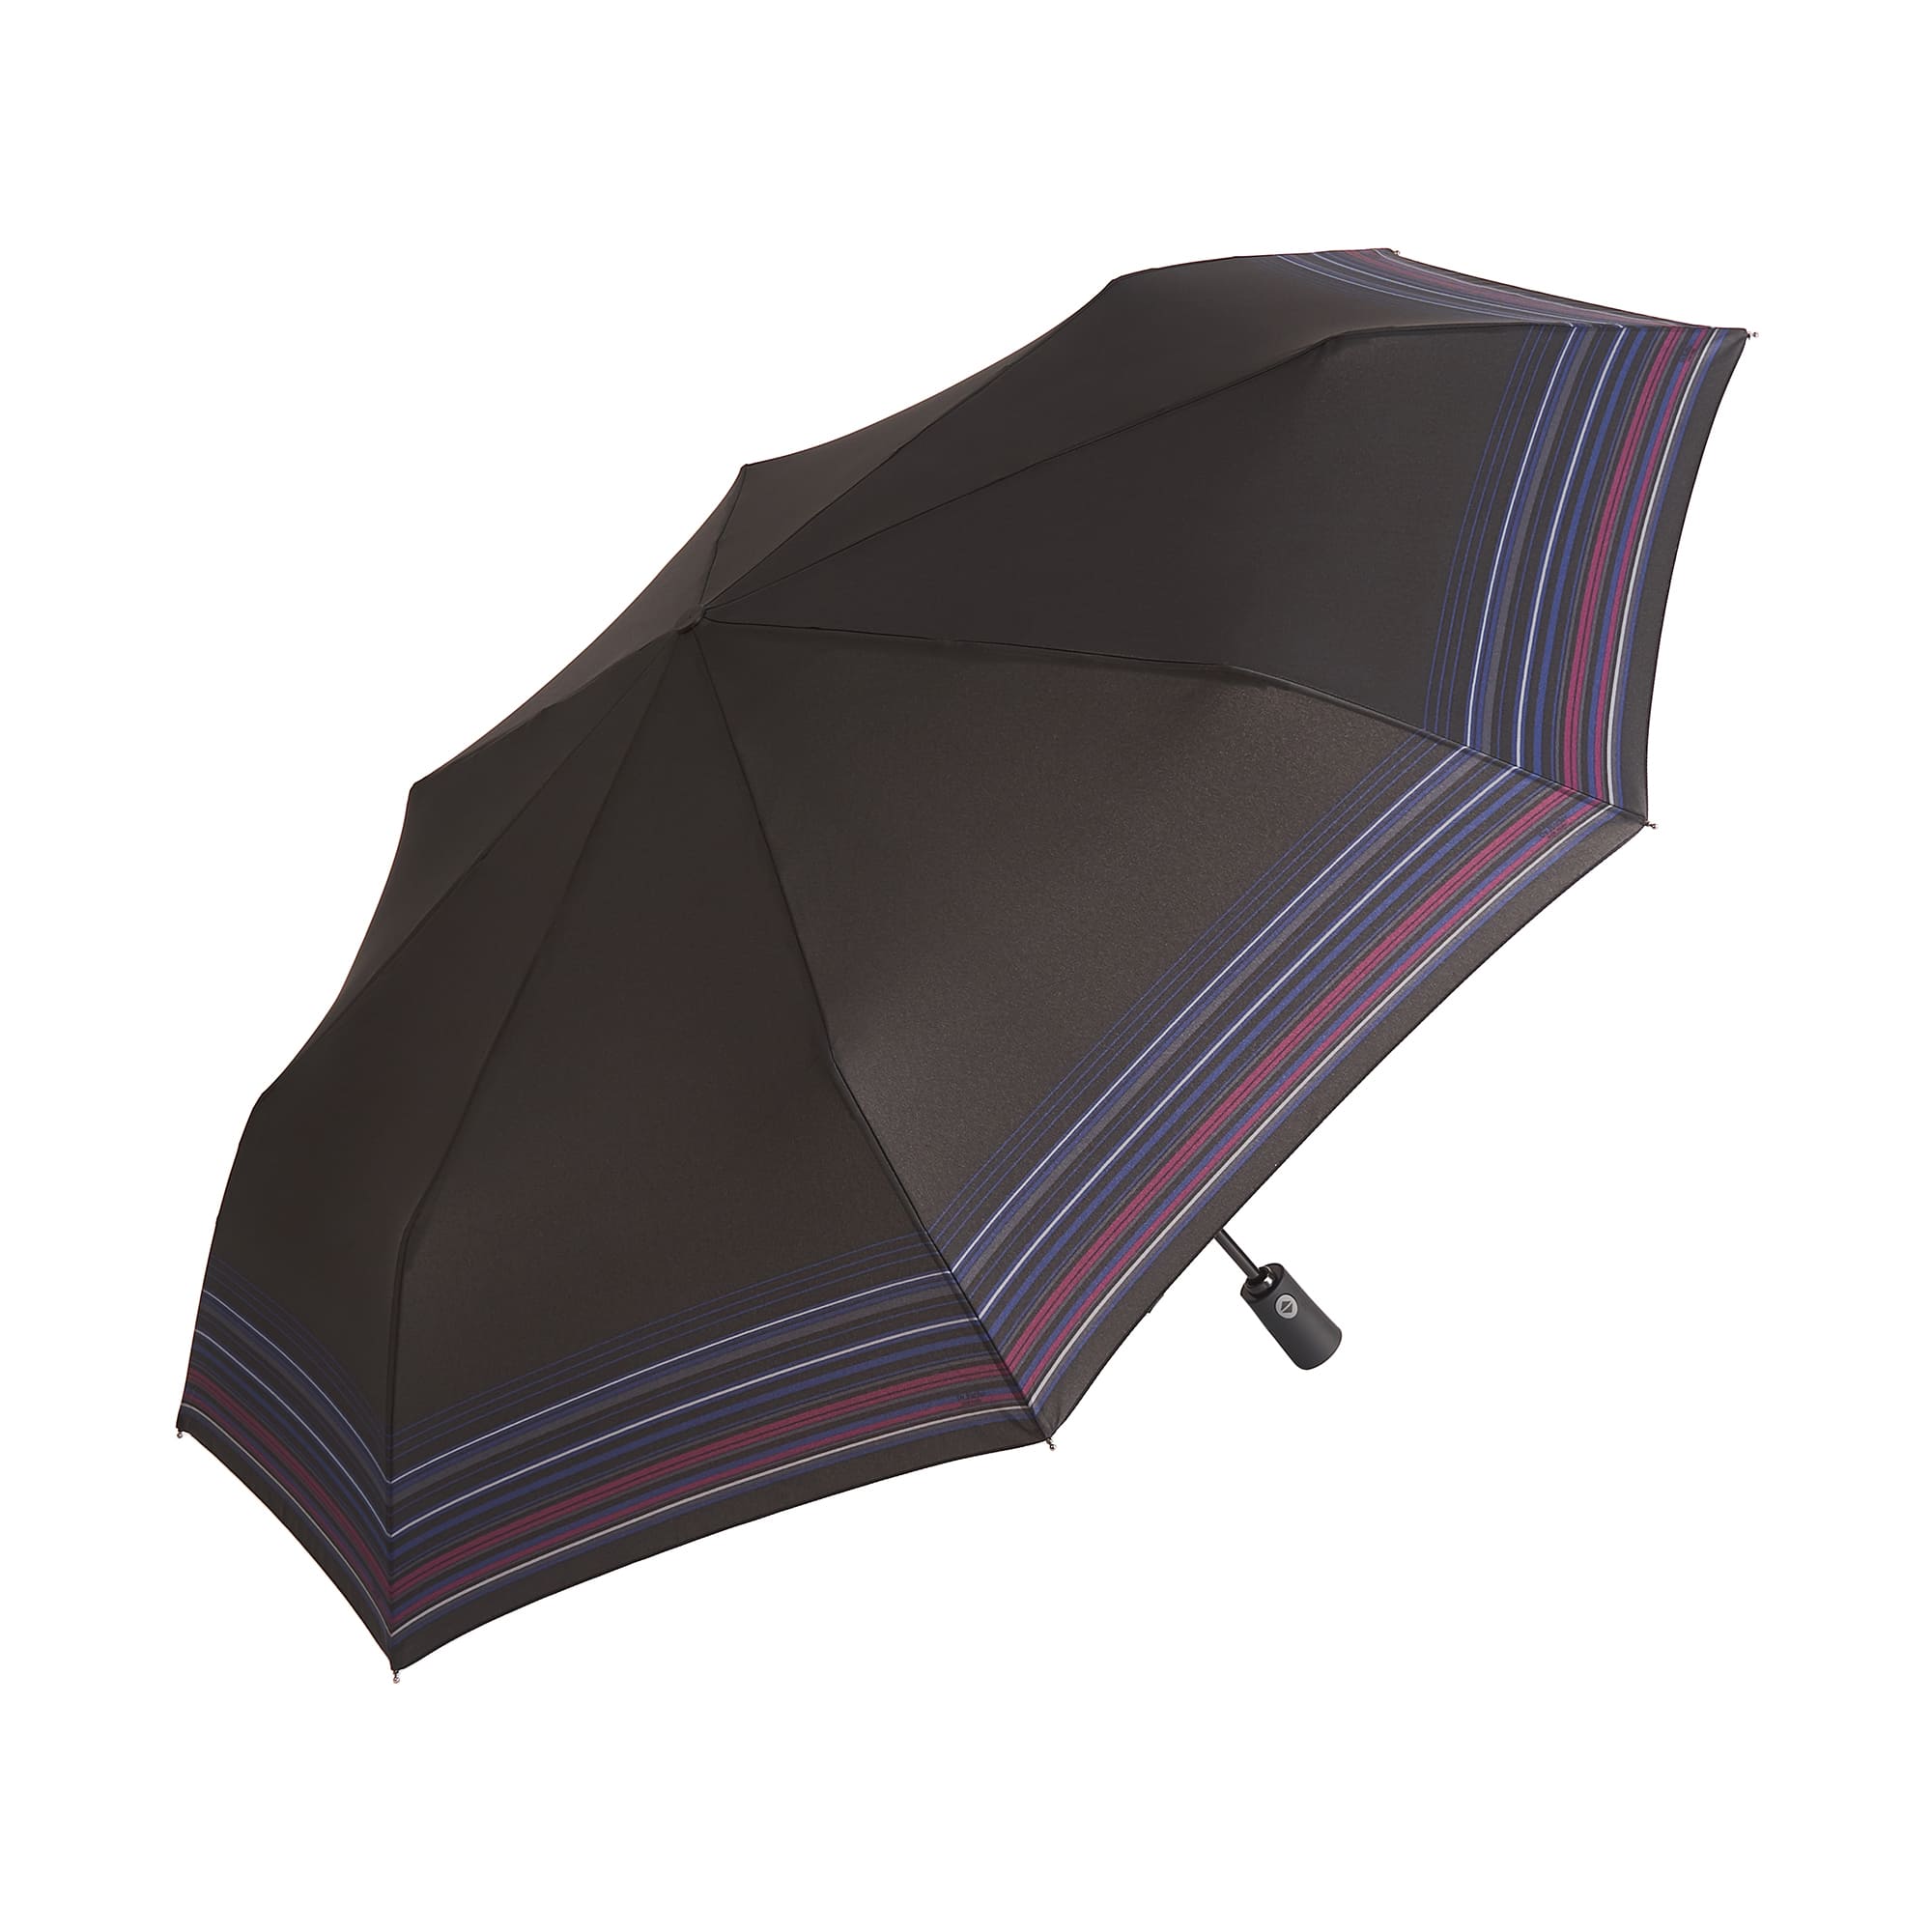 Др.Коффер E420 зонт, цвет черный